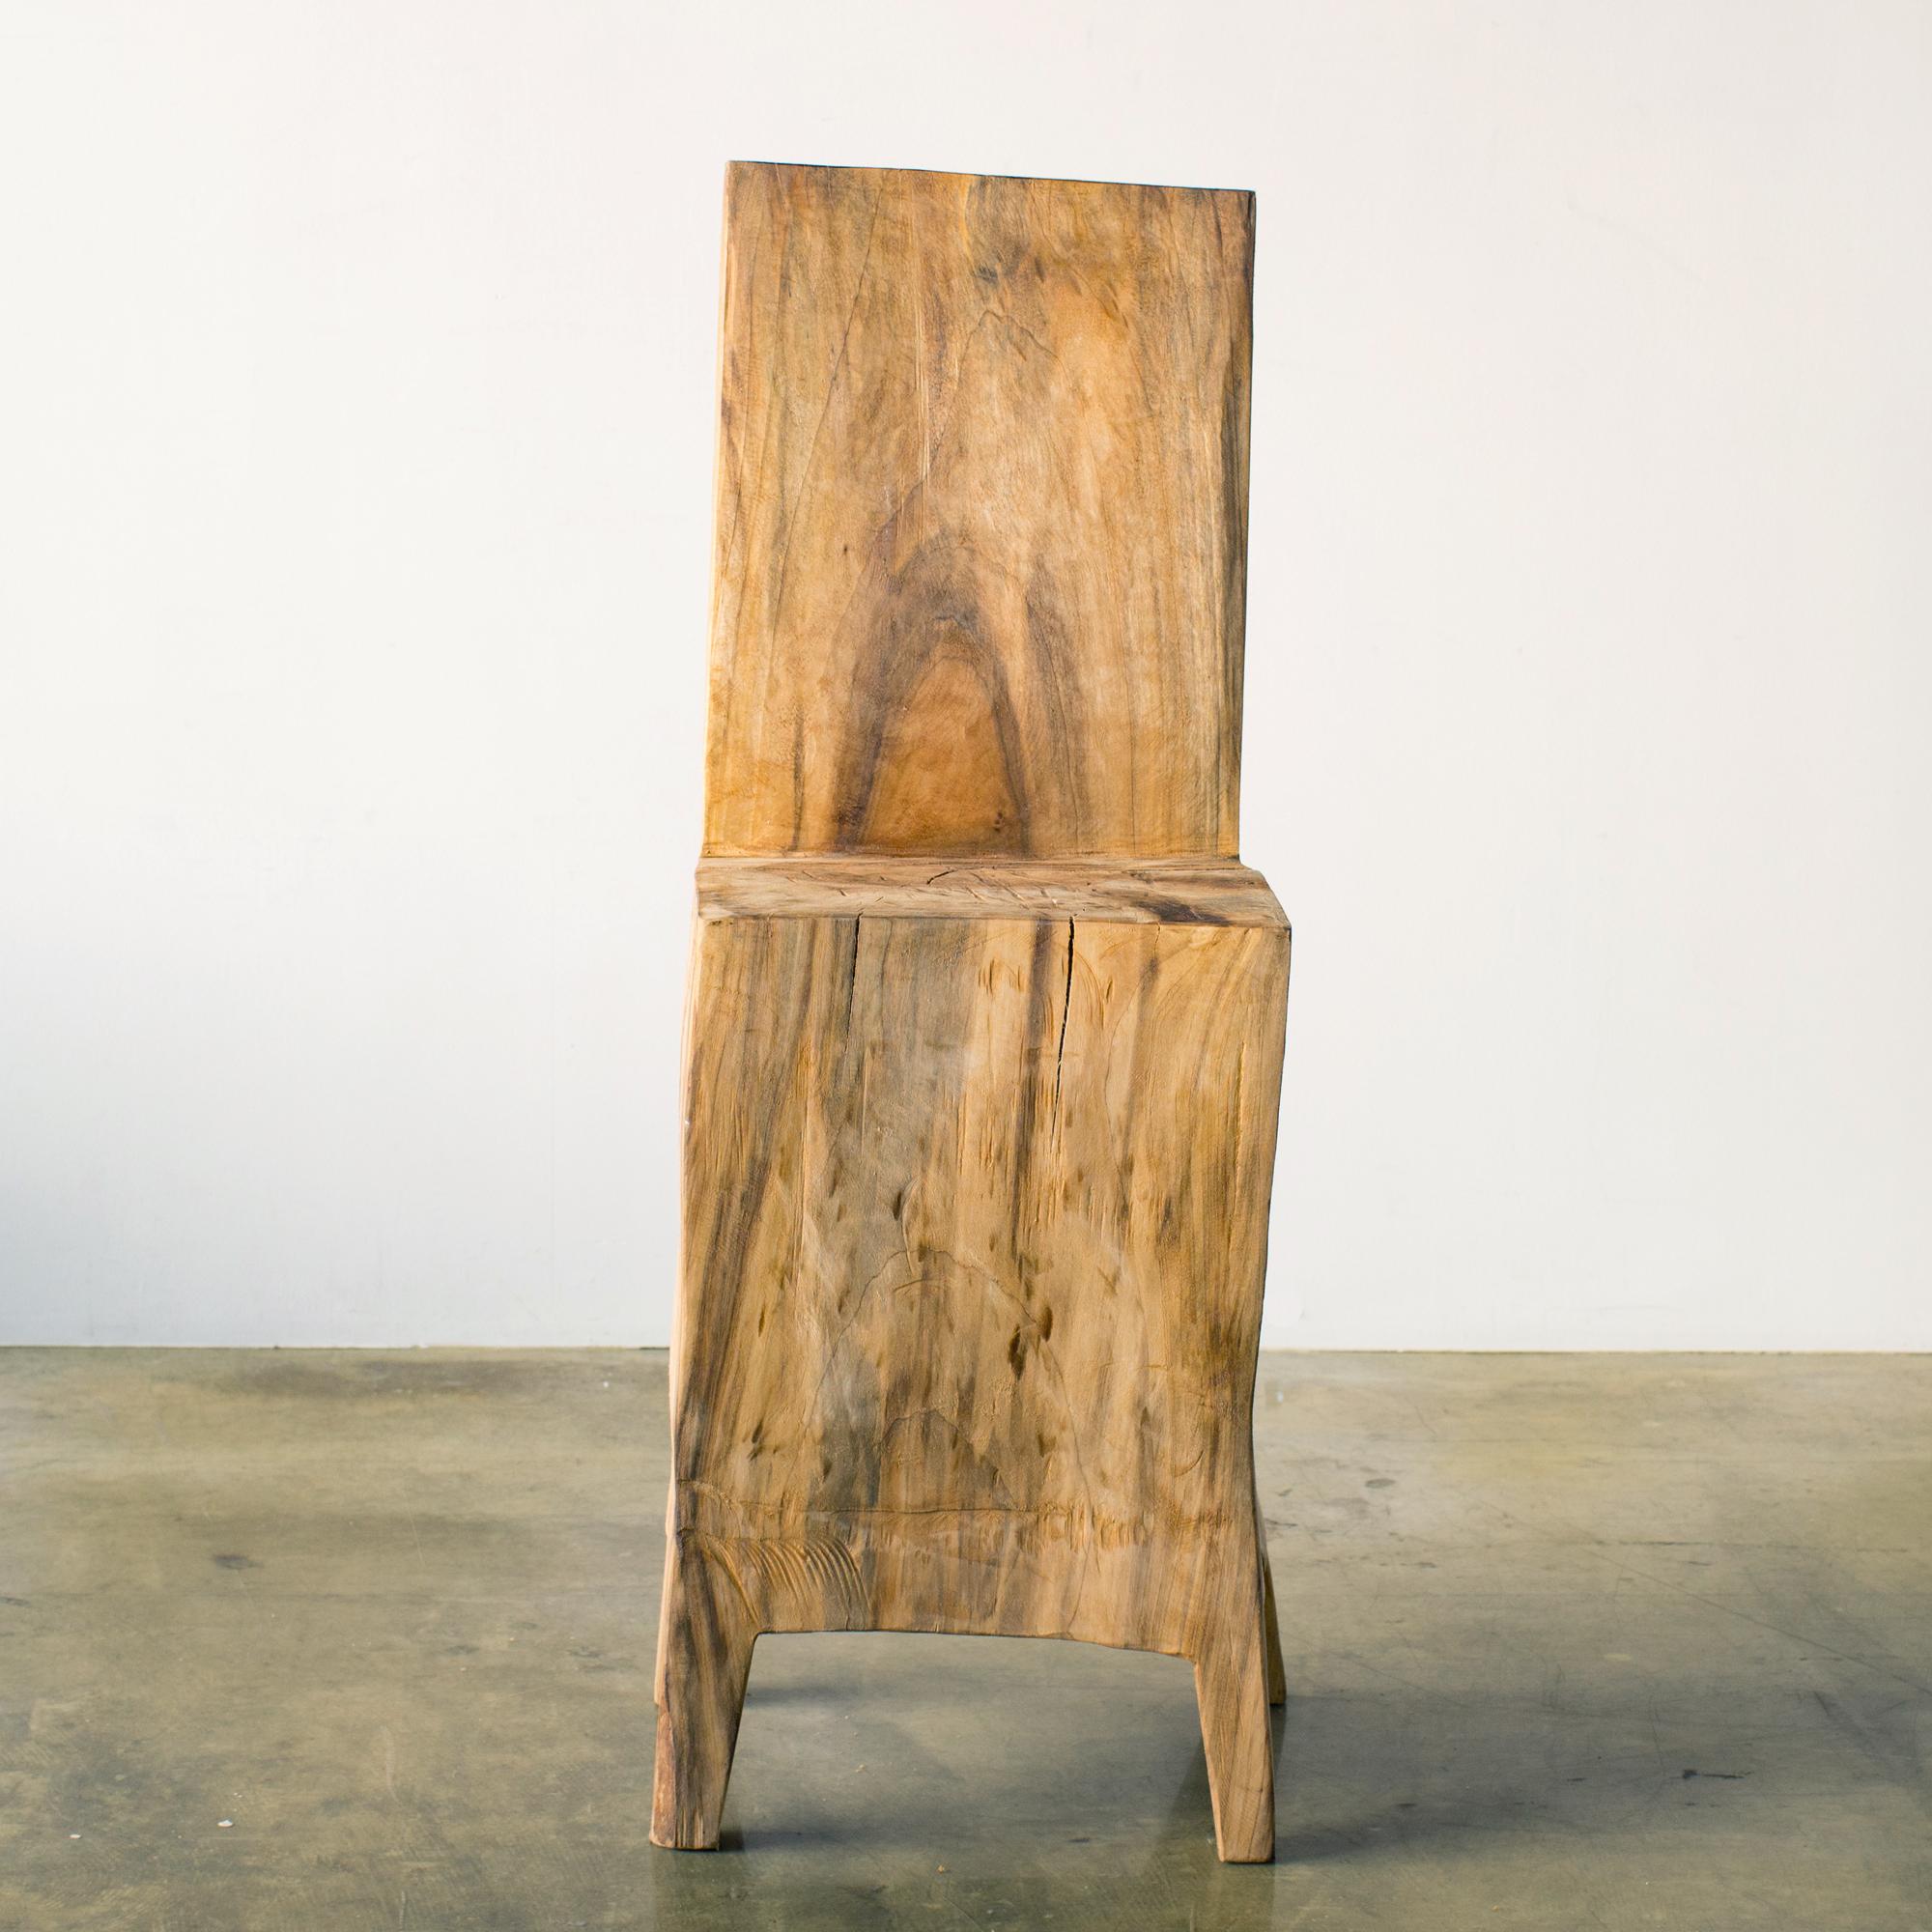 Chaise Cubo
chaise de Hiroyuki Nishimura.
Matériau : chêne
Cette œuvre est sculptée dans du bois à l'aide de plusieurs types de tronçonneuses.
La plupart des bois utilisés pour ses œuvres ne peuvent servir à rien, ces bois sont des matériaux